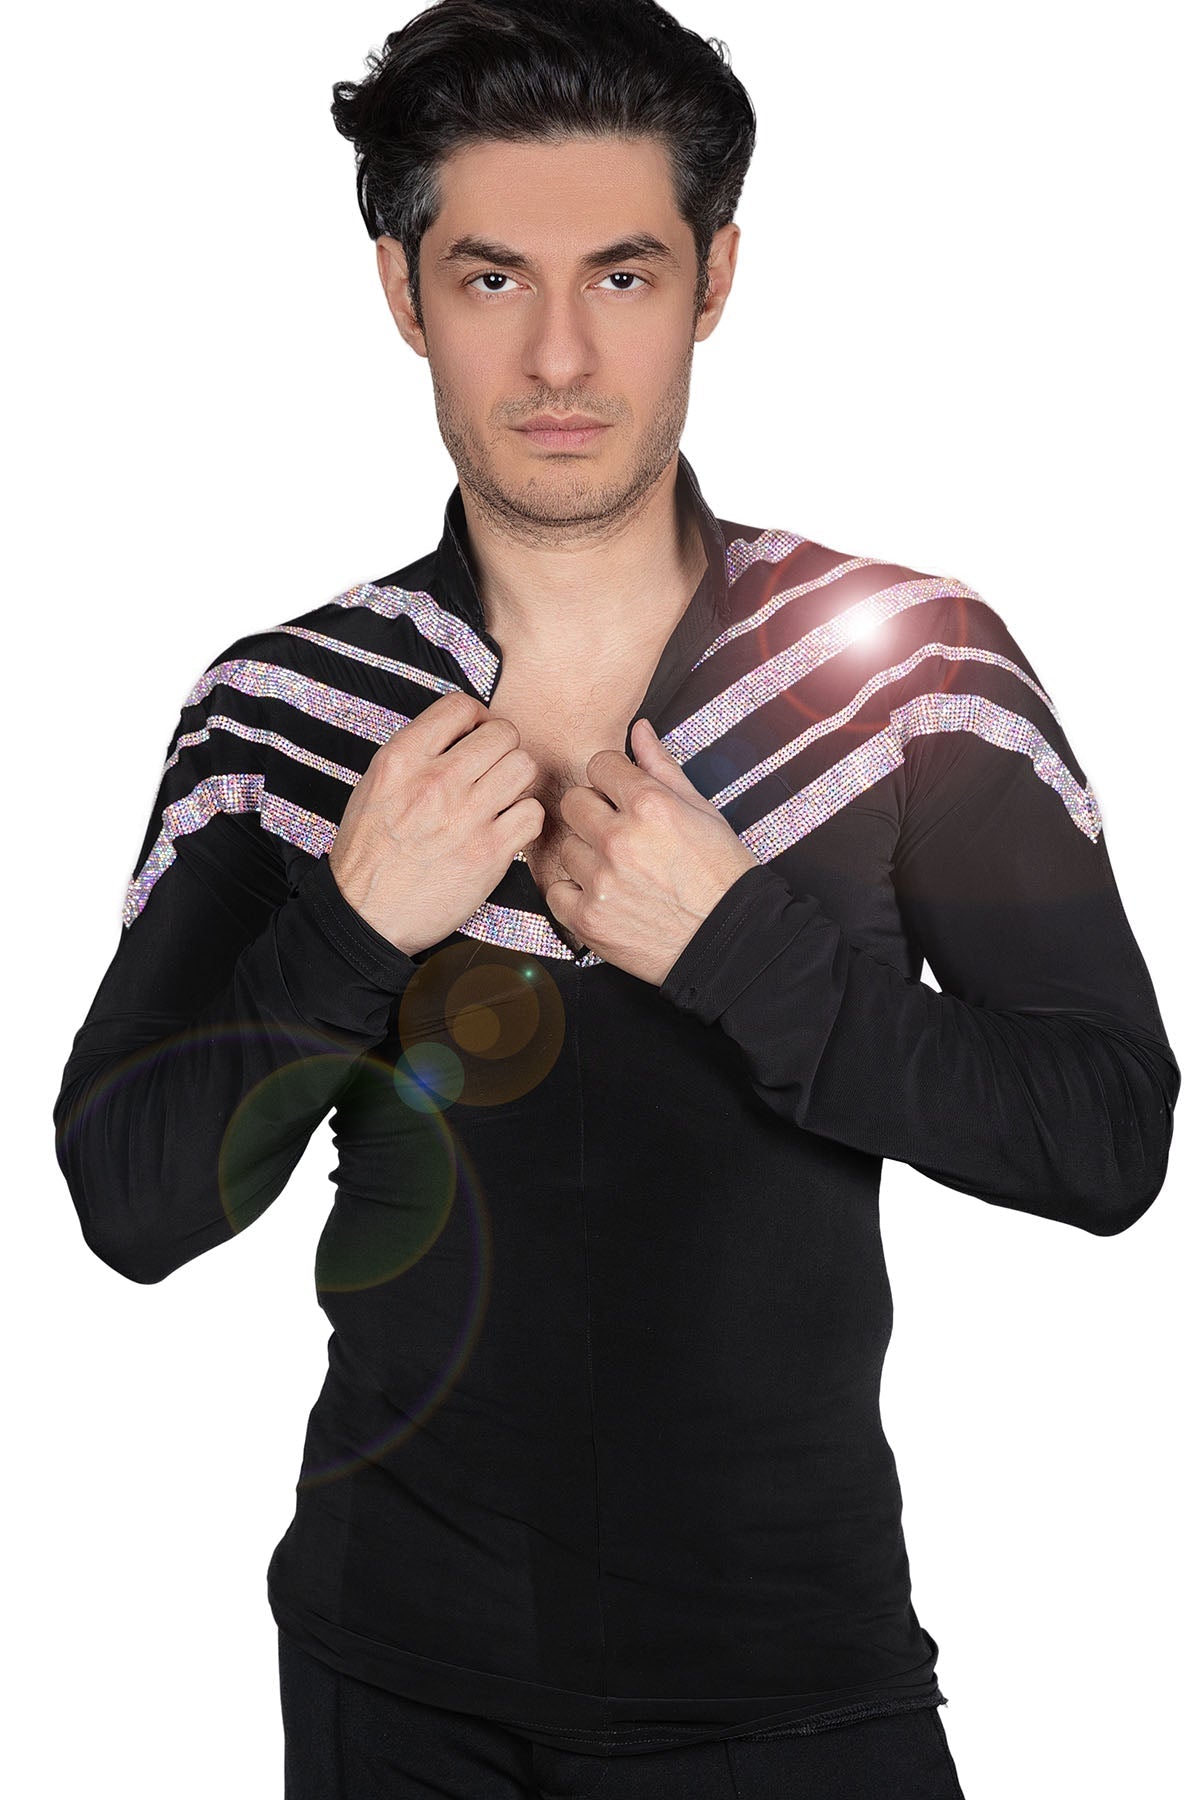 Rhinestone stripe detail on men's black Latin shirt